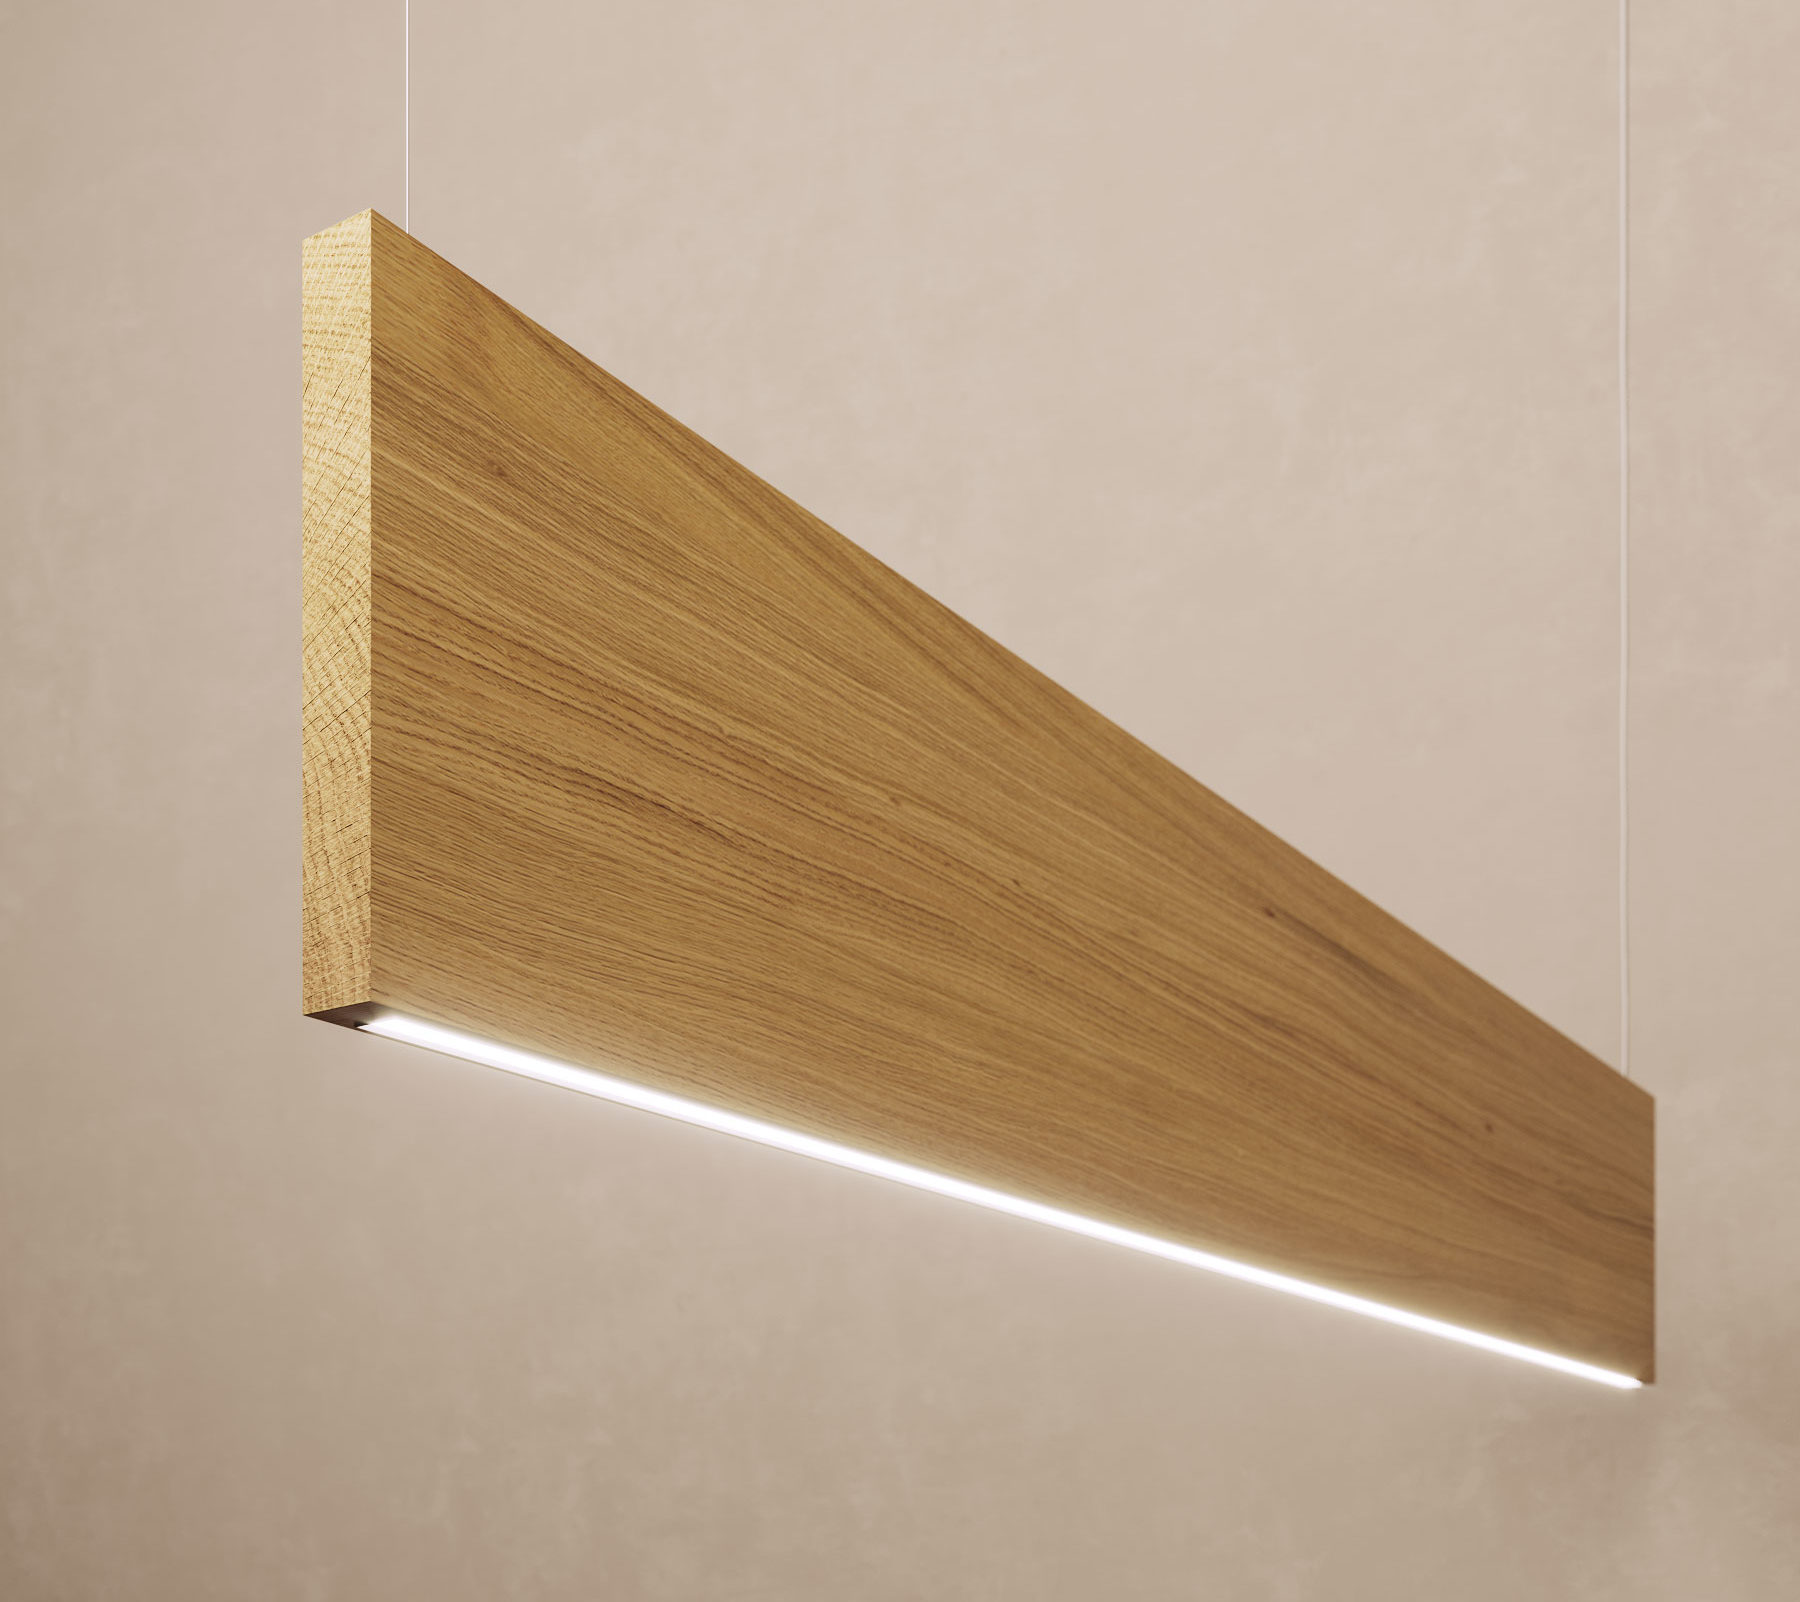 Acoustic wood baffle with LED lighting